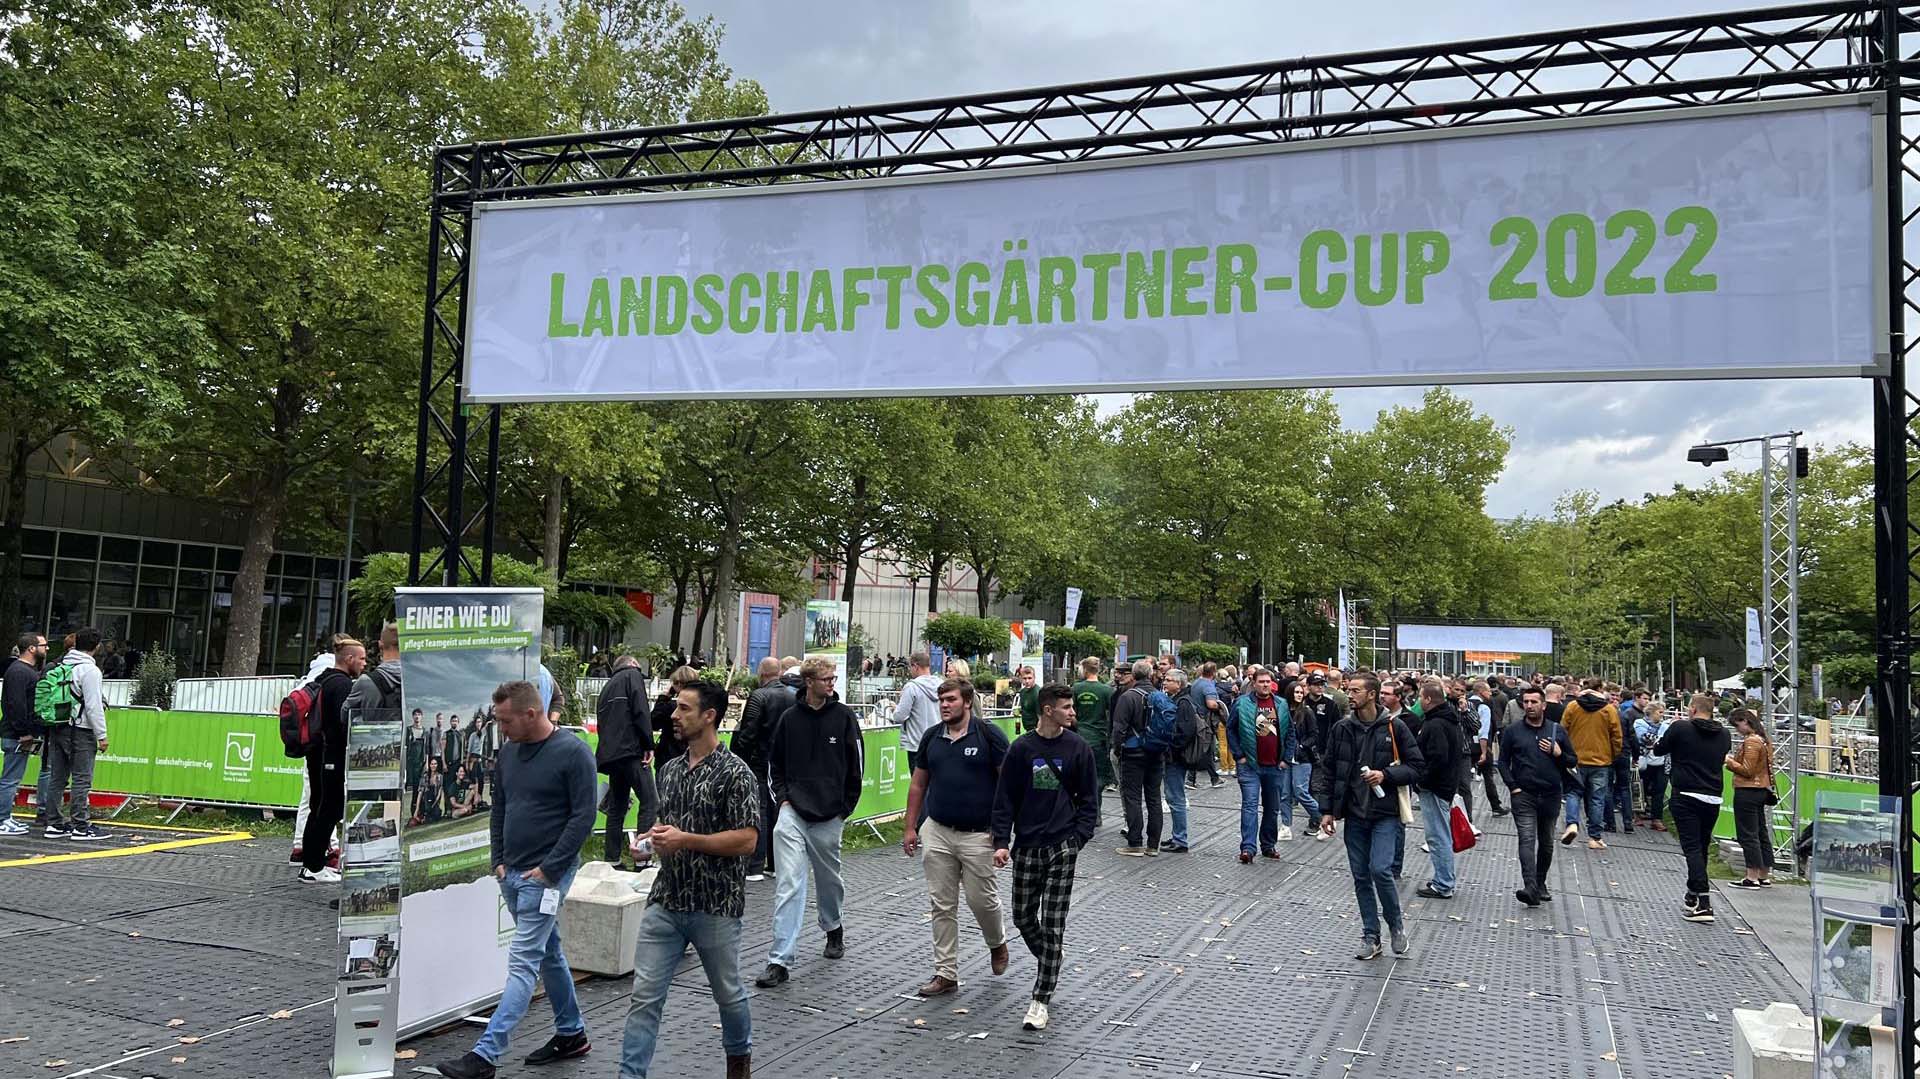 Landschaftsgärtner-Cup 2022: Die Massen strömen durch den Messepark